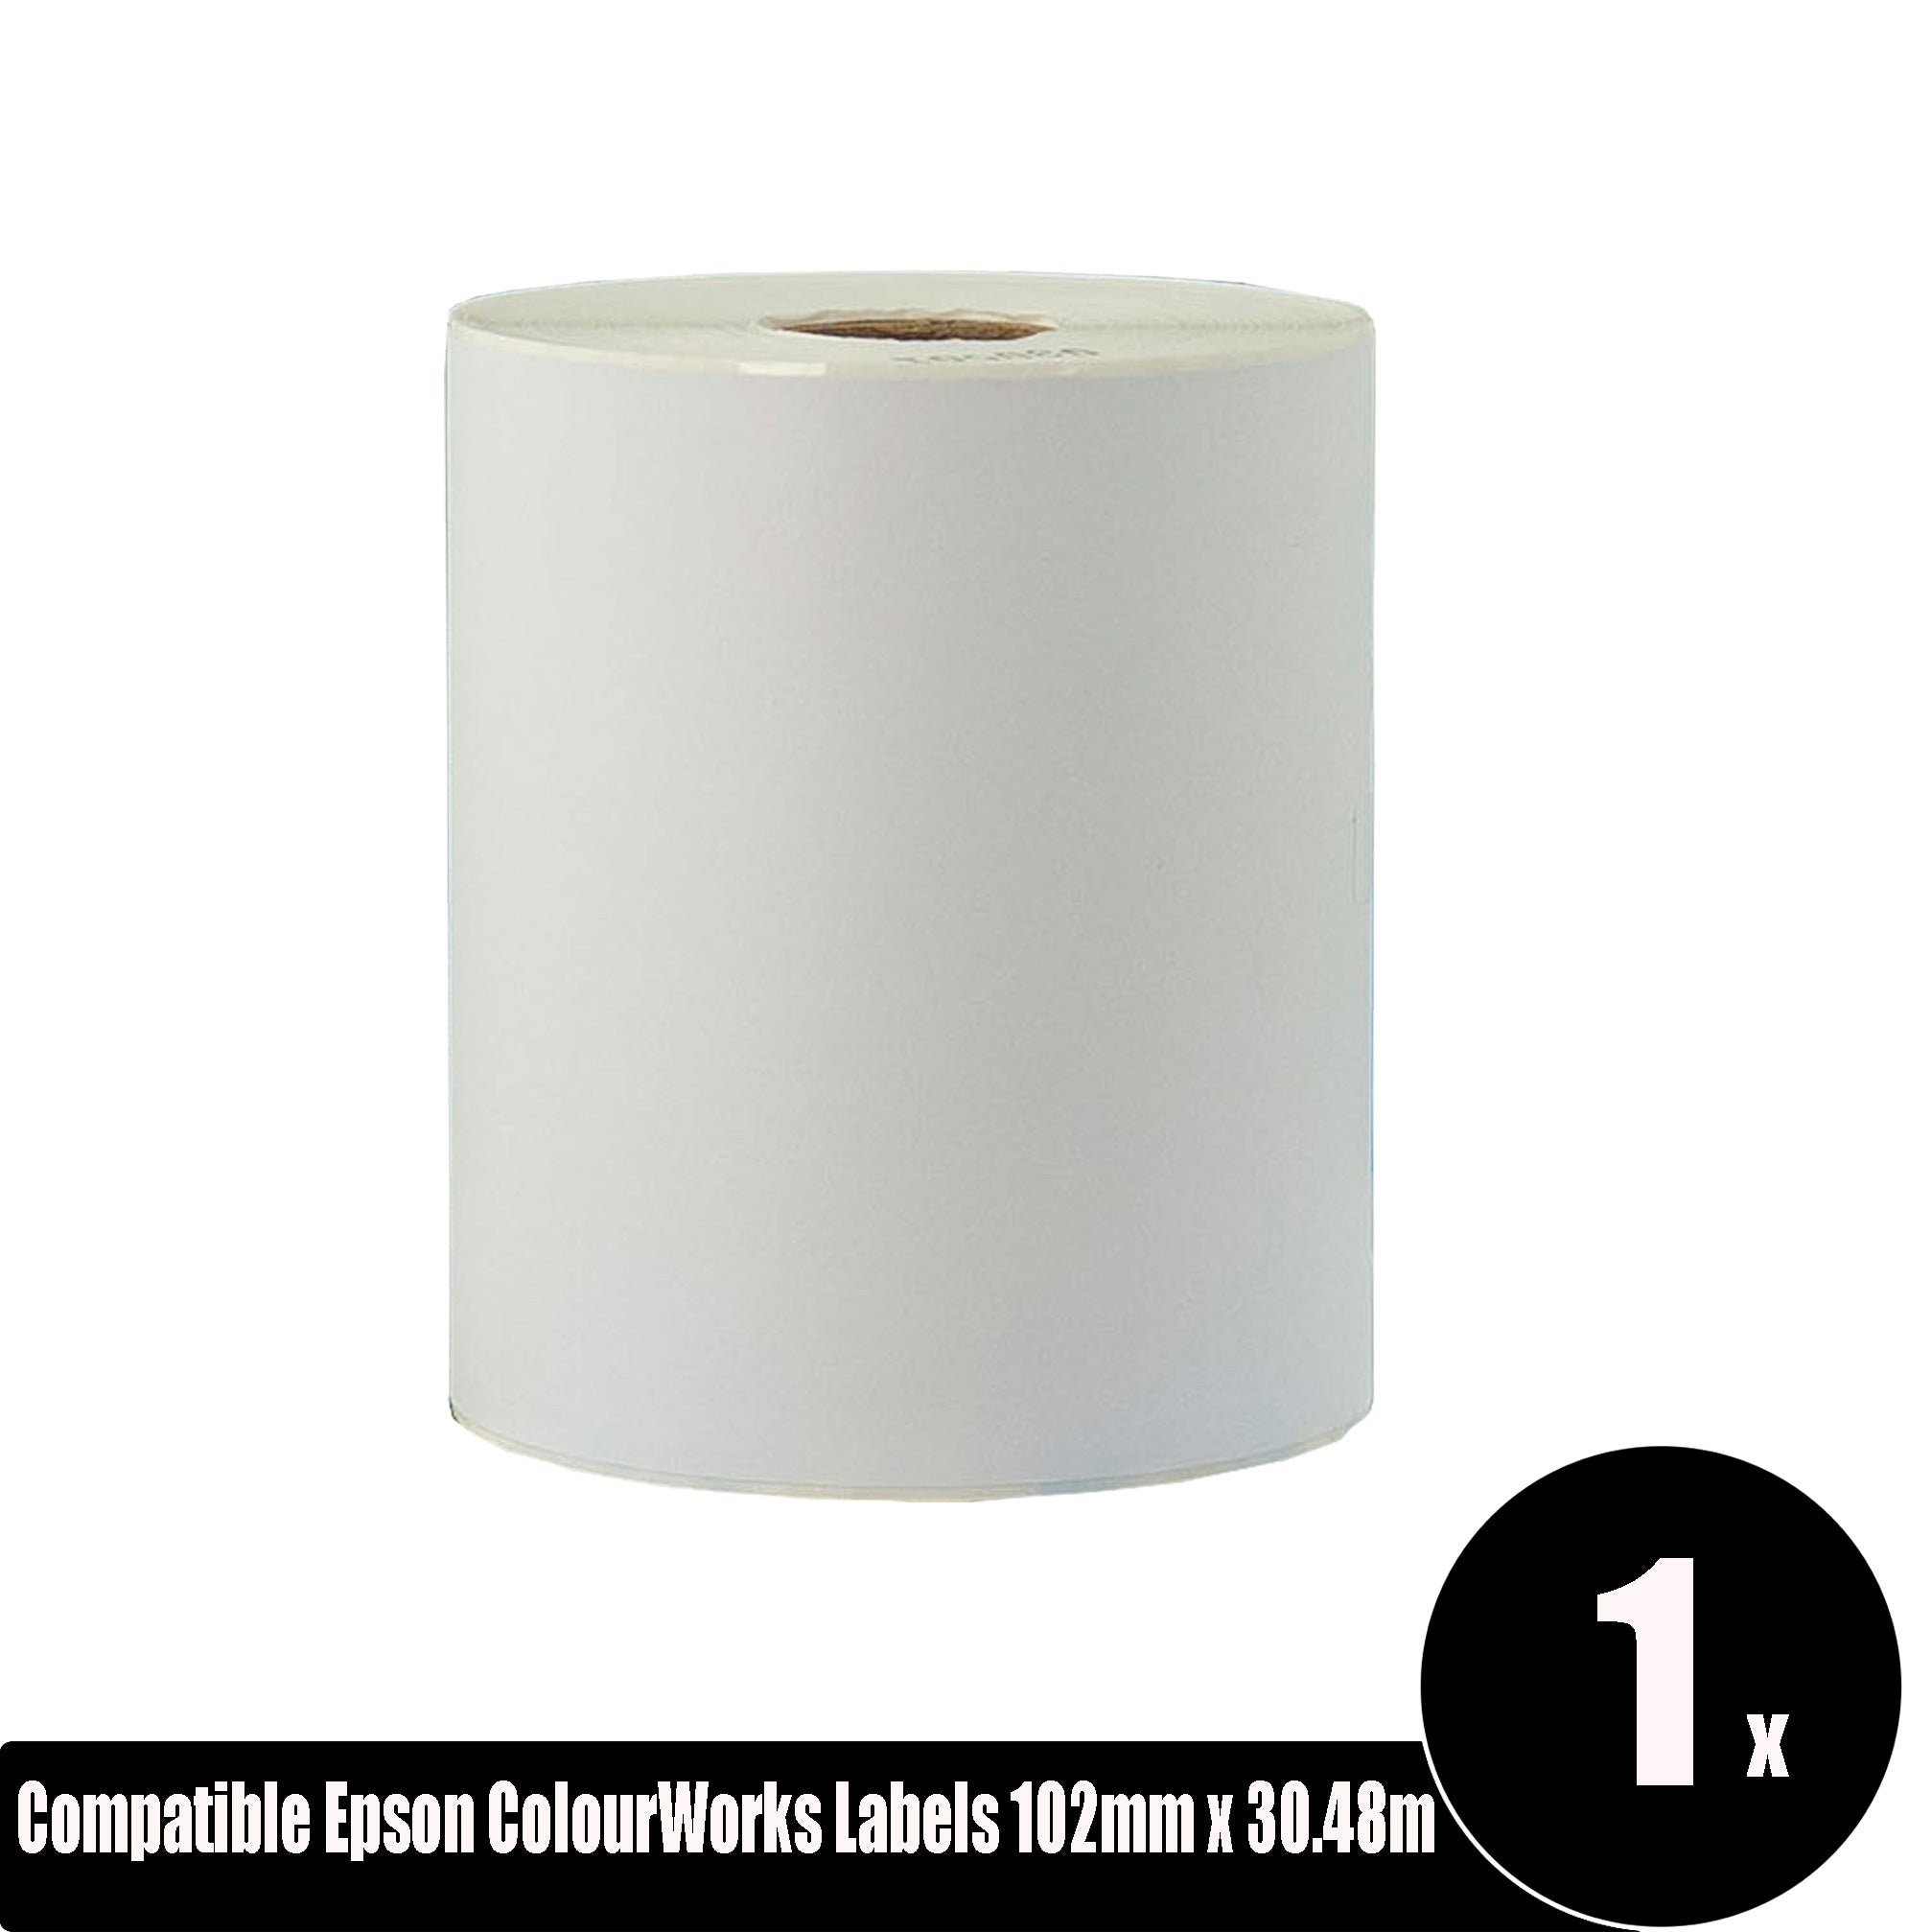 Compatible Epson ColourWorks White Label 102mm x 30.48m Continuous Length